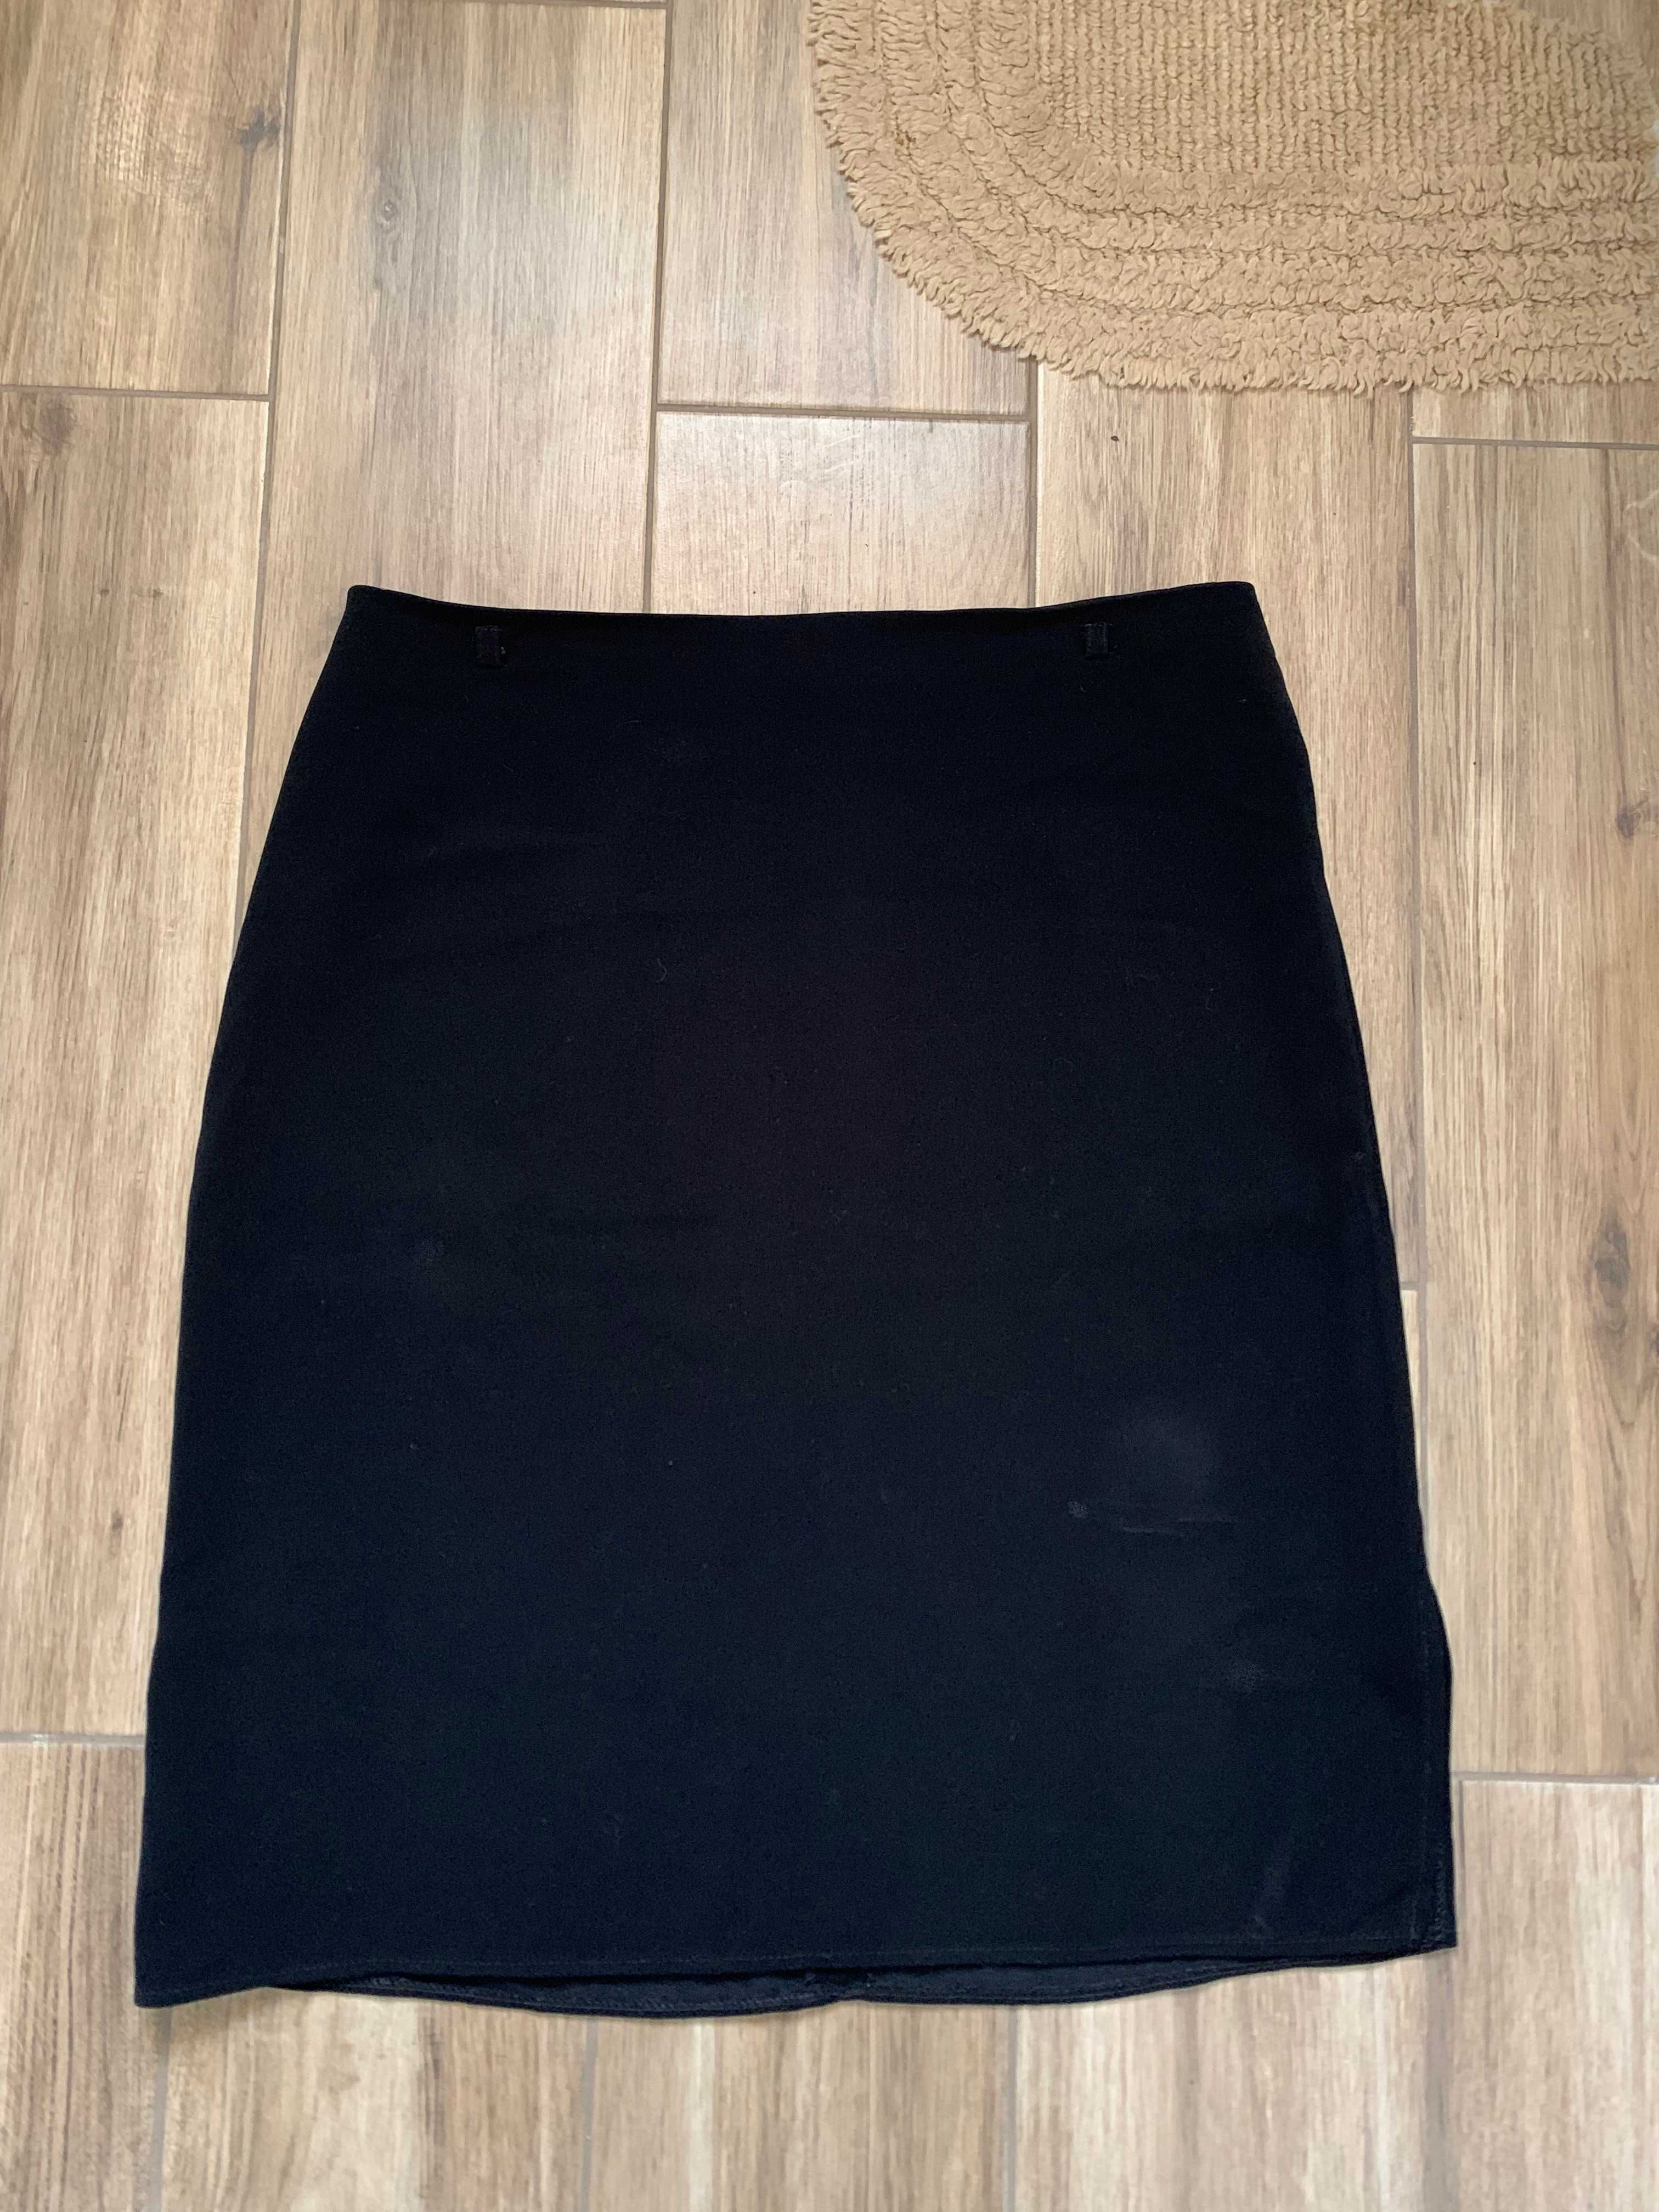 Krótka czarna spódnica Xanaka roz. L 40